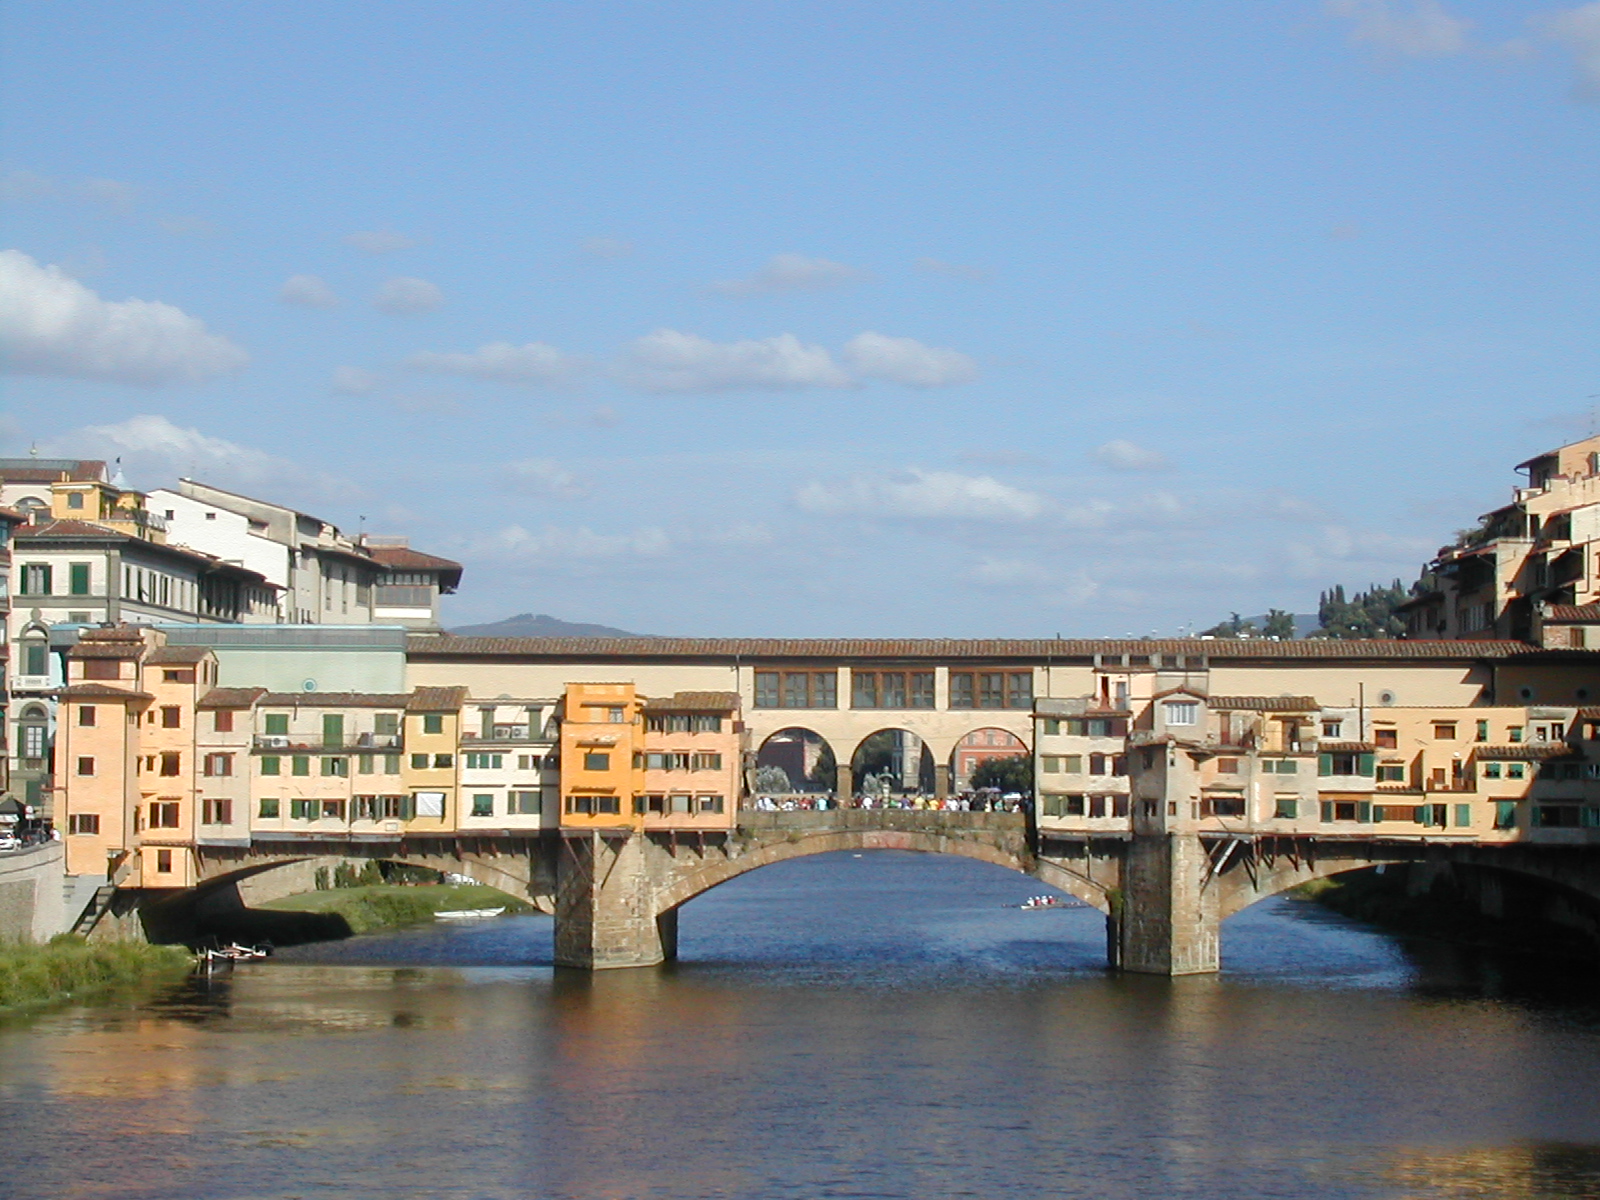 Cây Cầu cũ (Ponte Vecchio) nổi tiếng. (Ảnh: Lâm Lệ Quyên/ Epoch Times cung cấp)